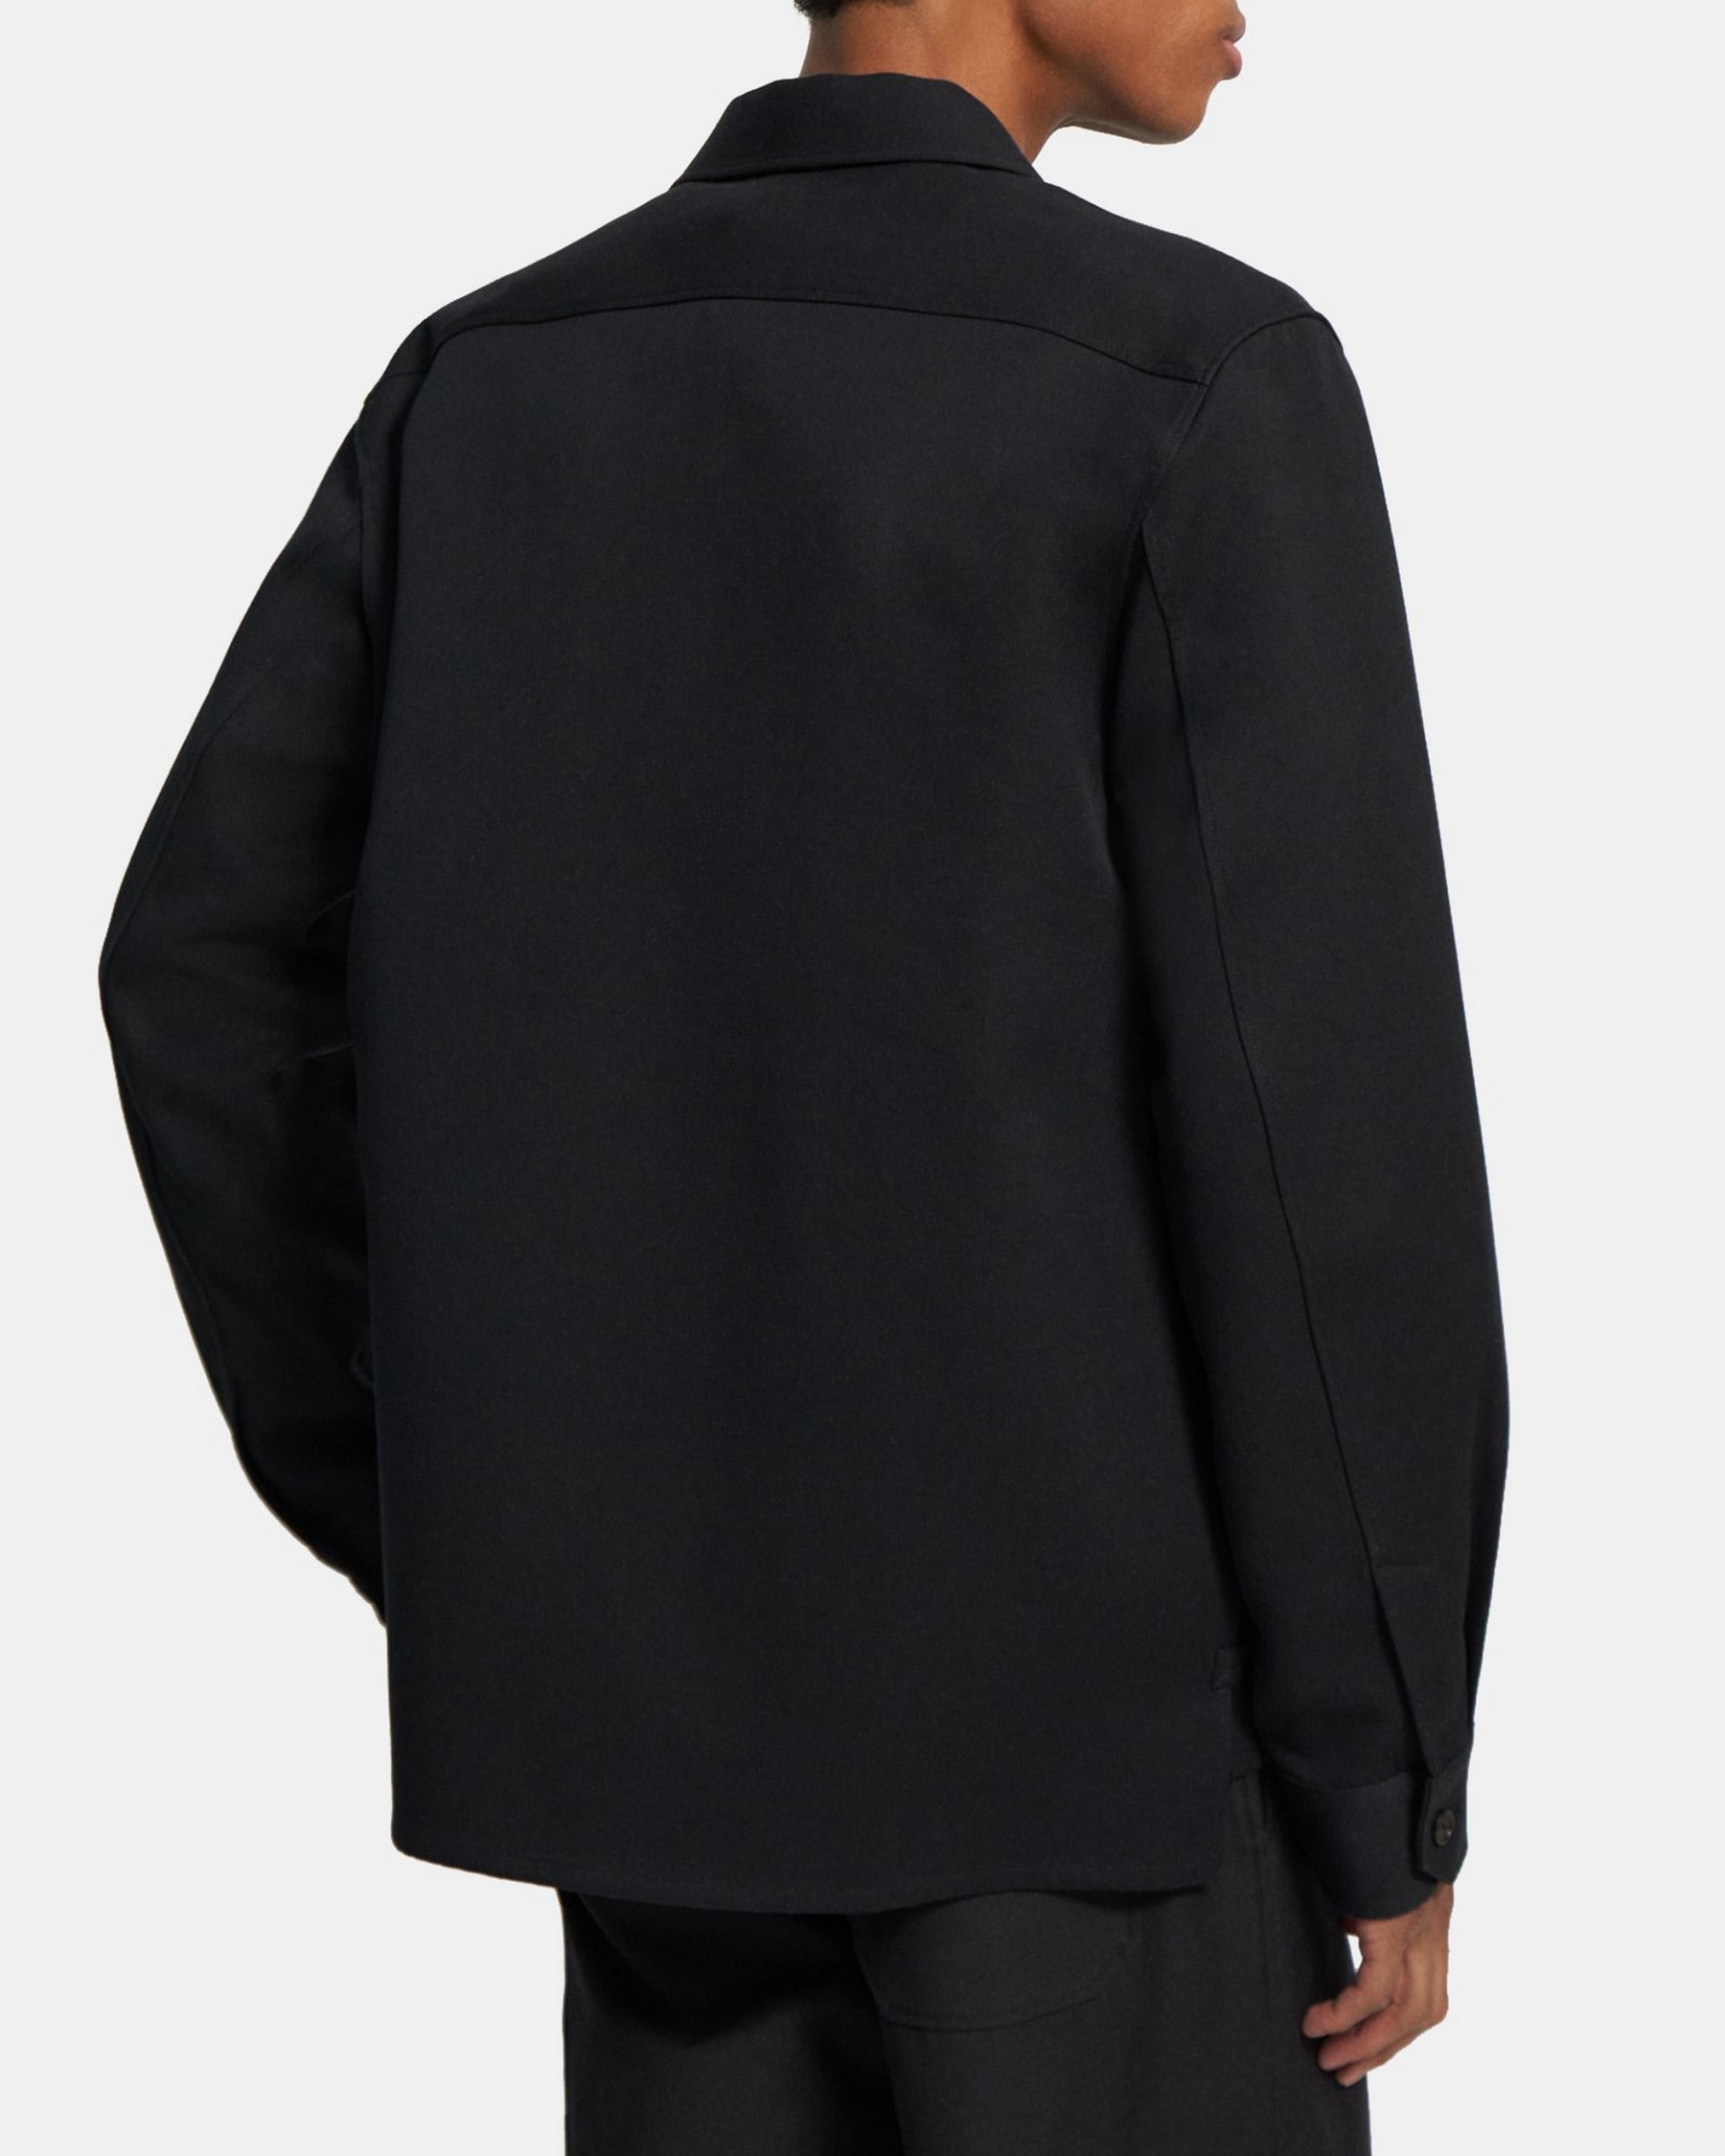 Black Cotton-Wool Twill Shirt Jacket | Theory Project